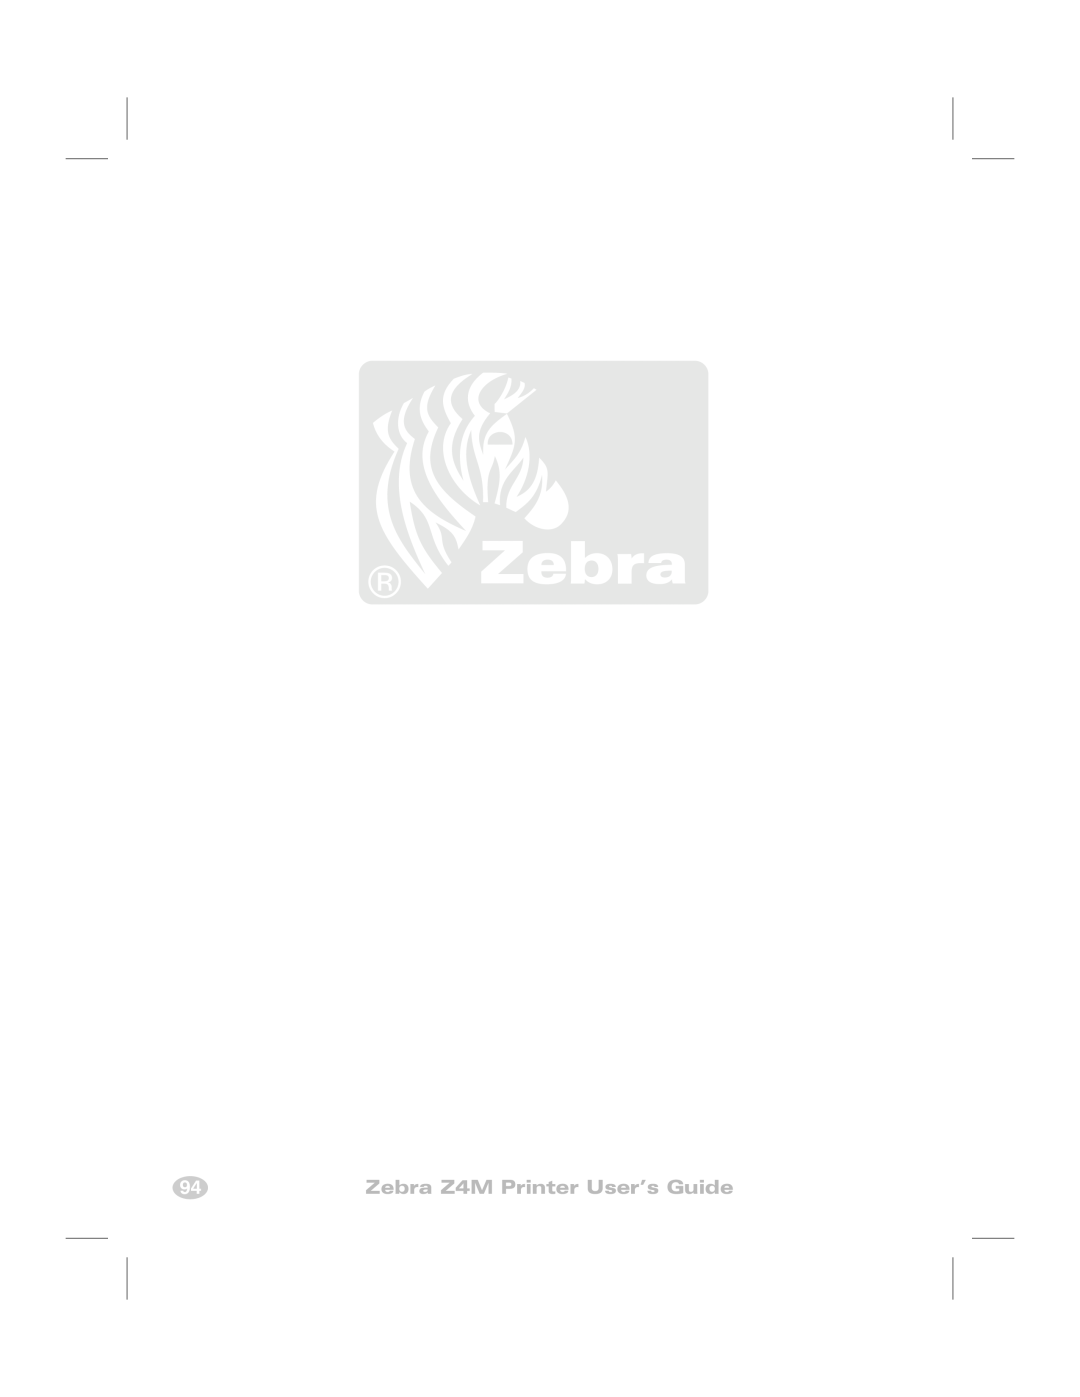 Zebra Technologies manual Zebra Z4M Printer User’s Guide 